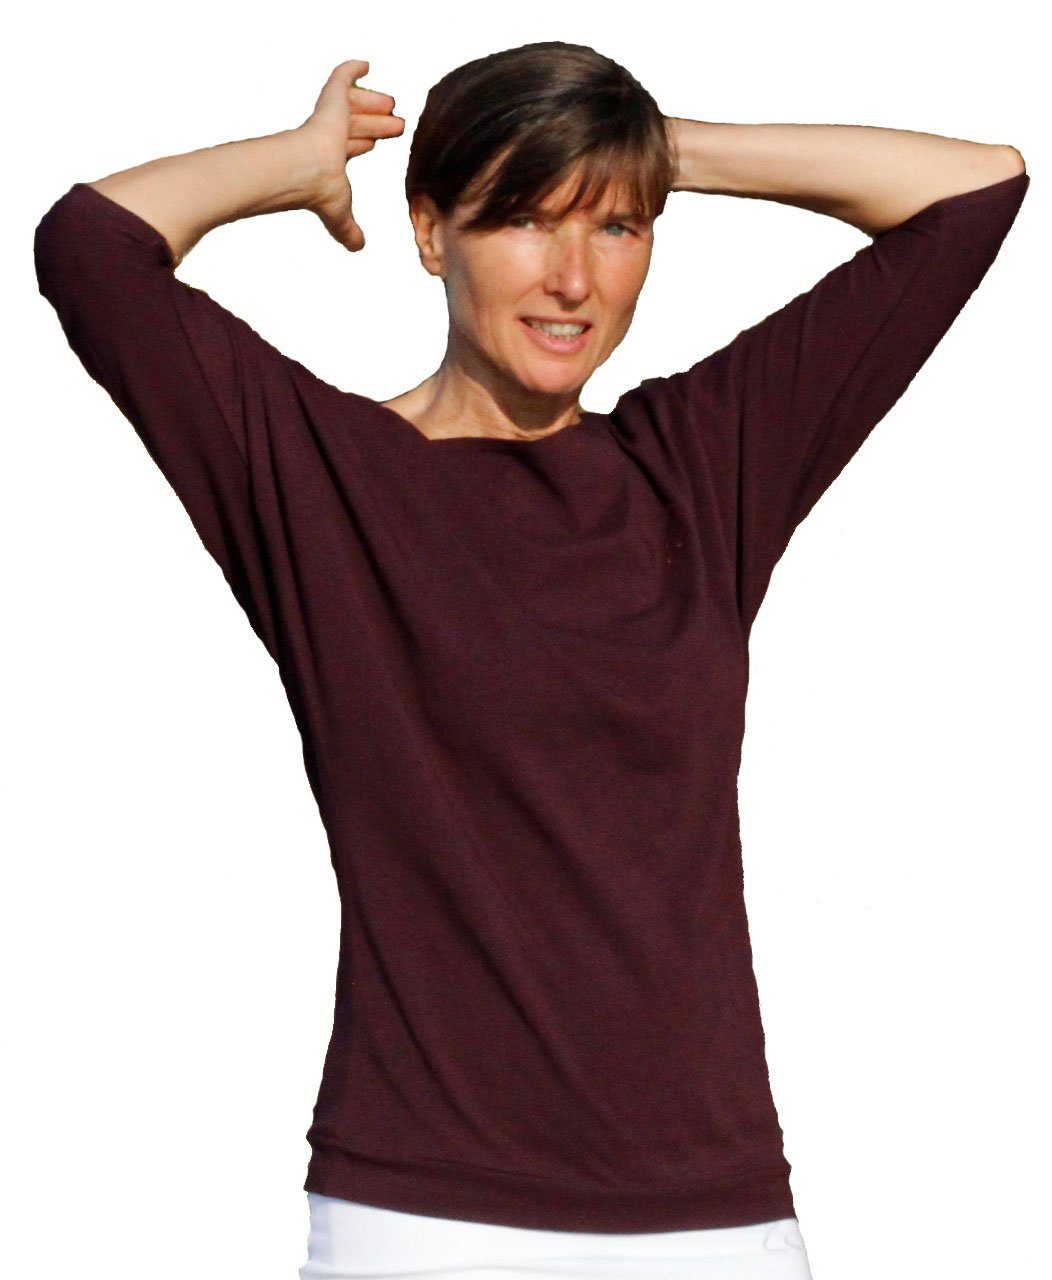 ESPARTO Yogashirt Halbarmshirt Sadaa in Bio-Baumwolle Wohlfühlshirt mit breitem Schulterausschnitt (U-Boot-Ausschnitt) Aubergine